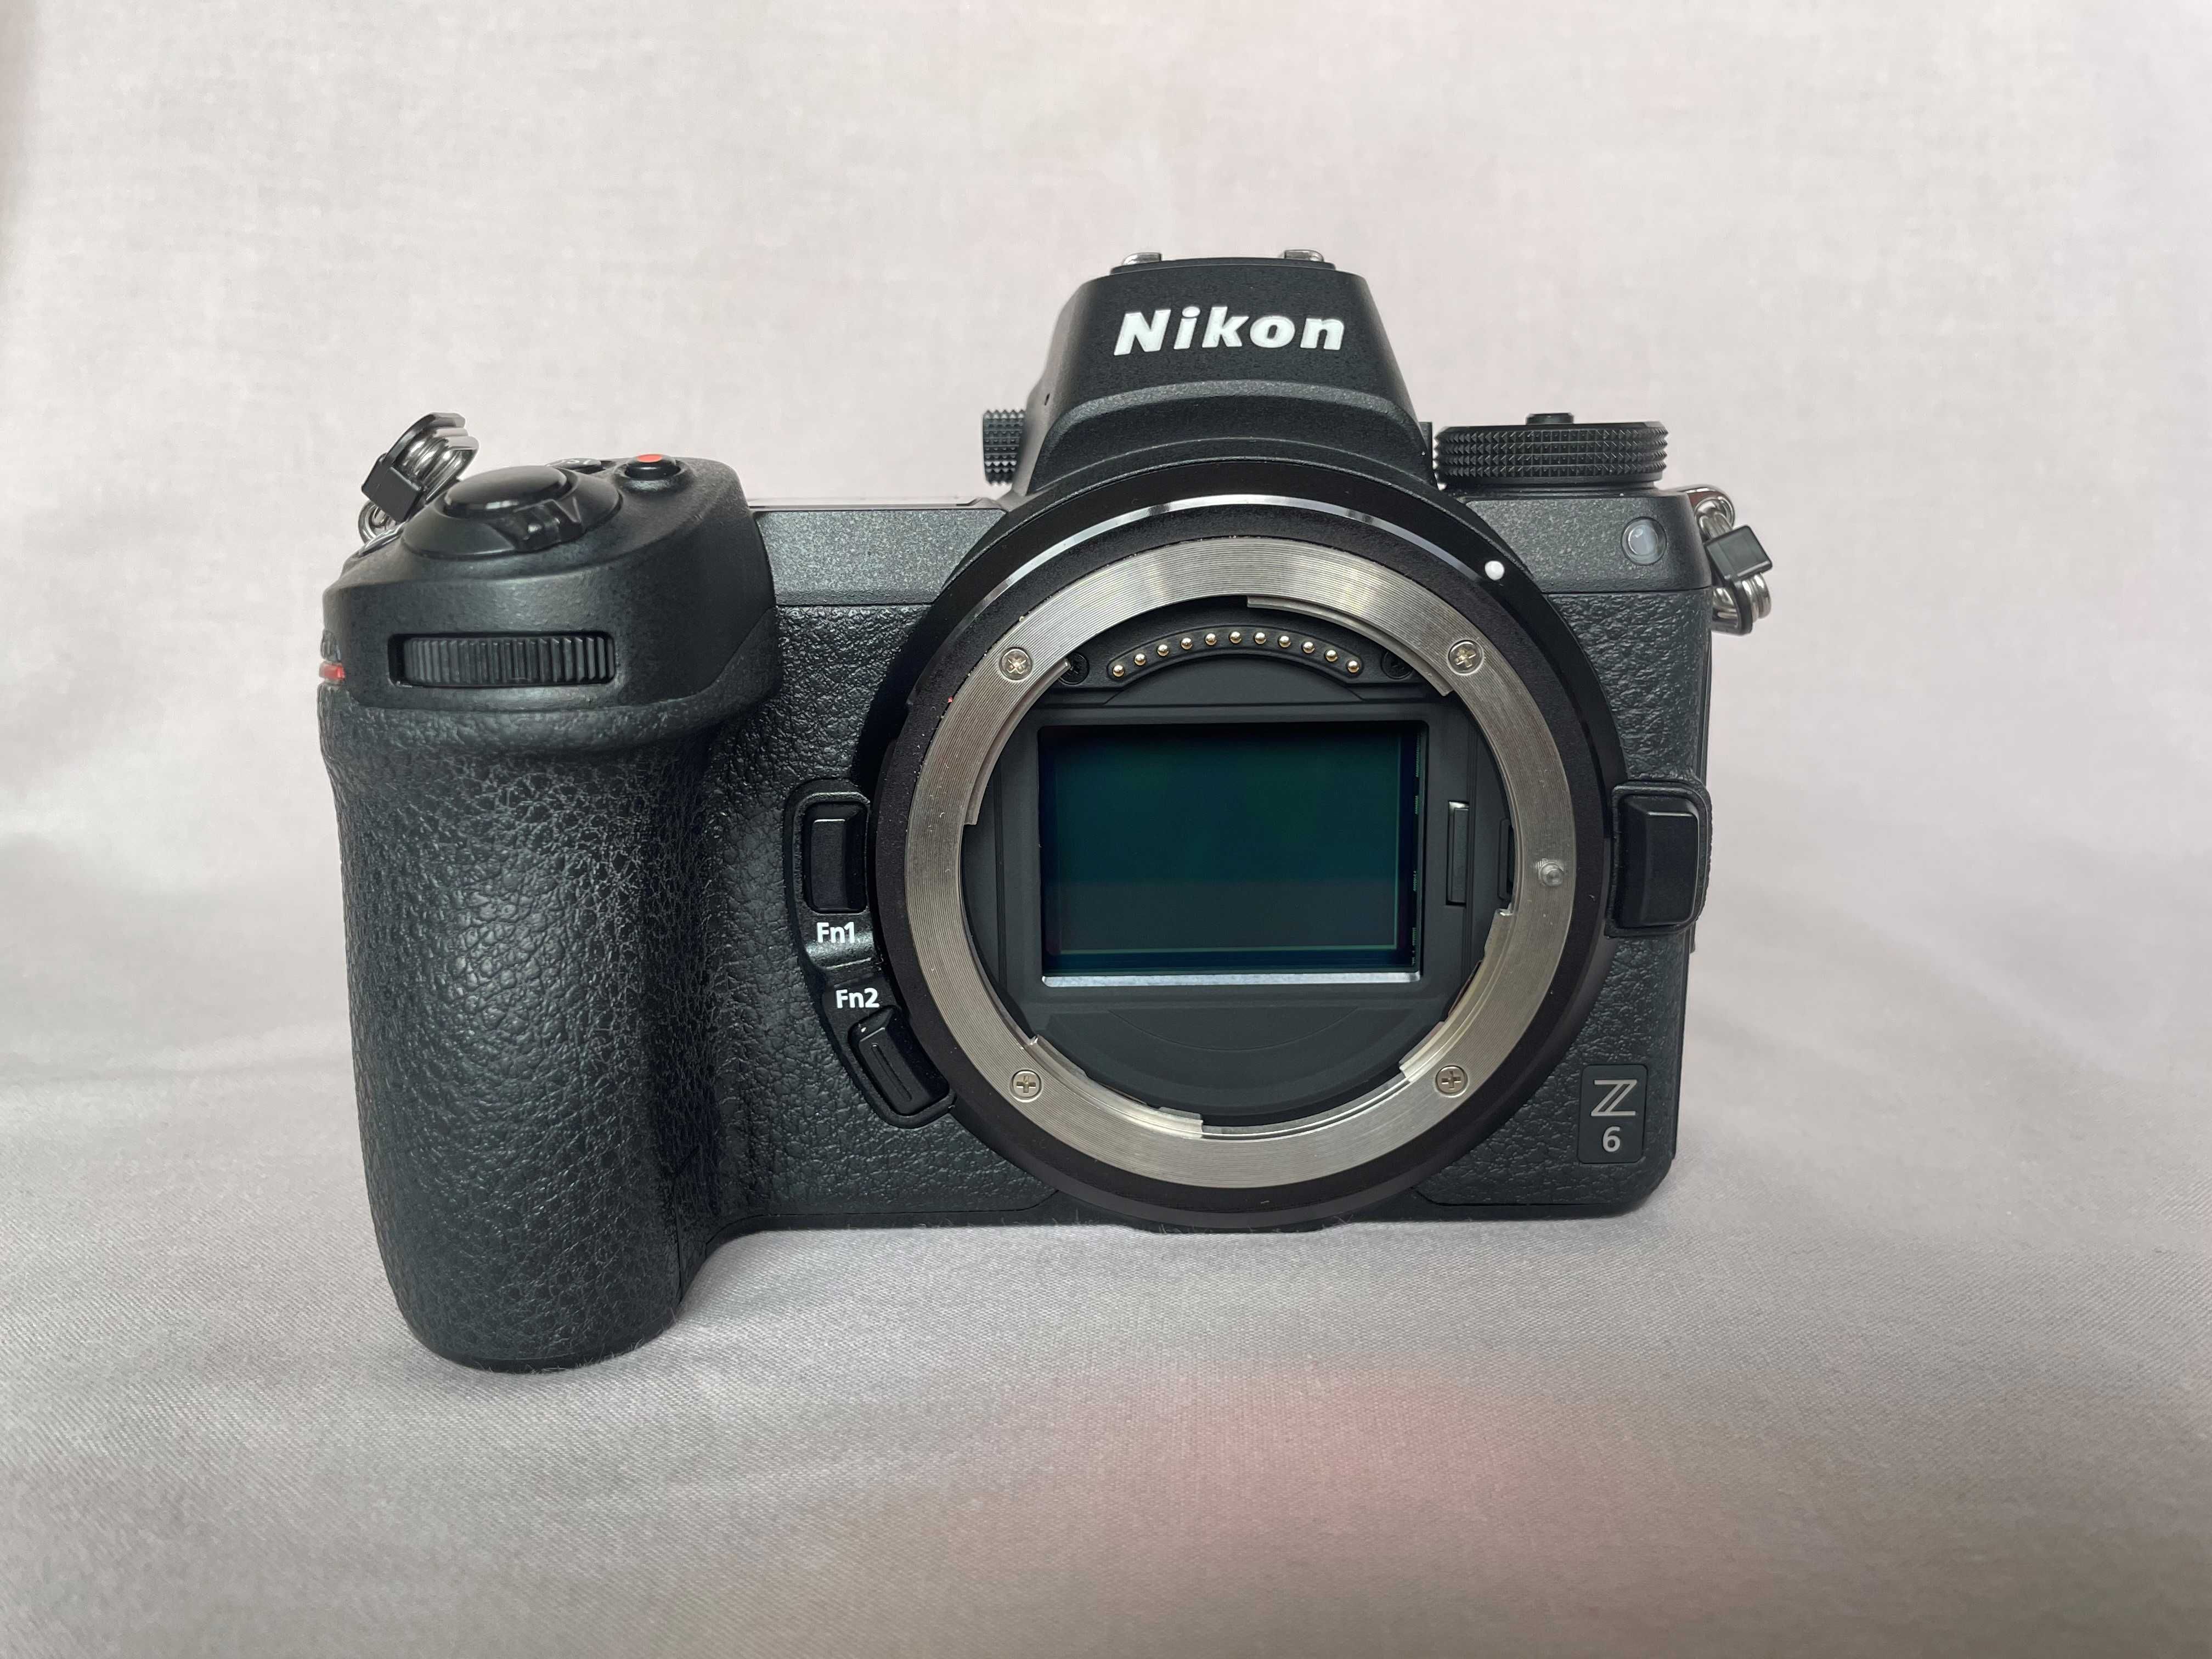 Aparat foro mirrorless, Nikon Z6